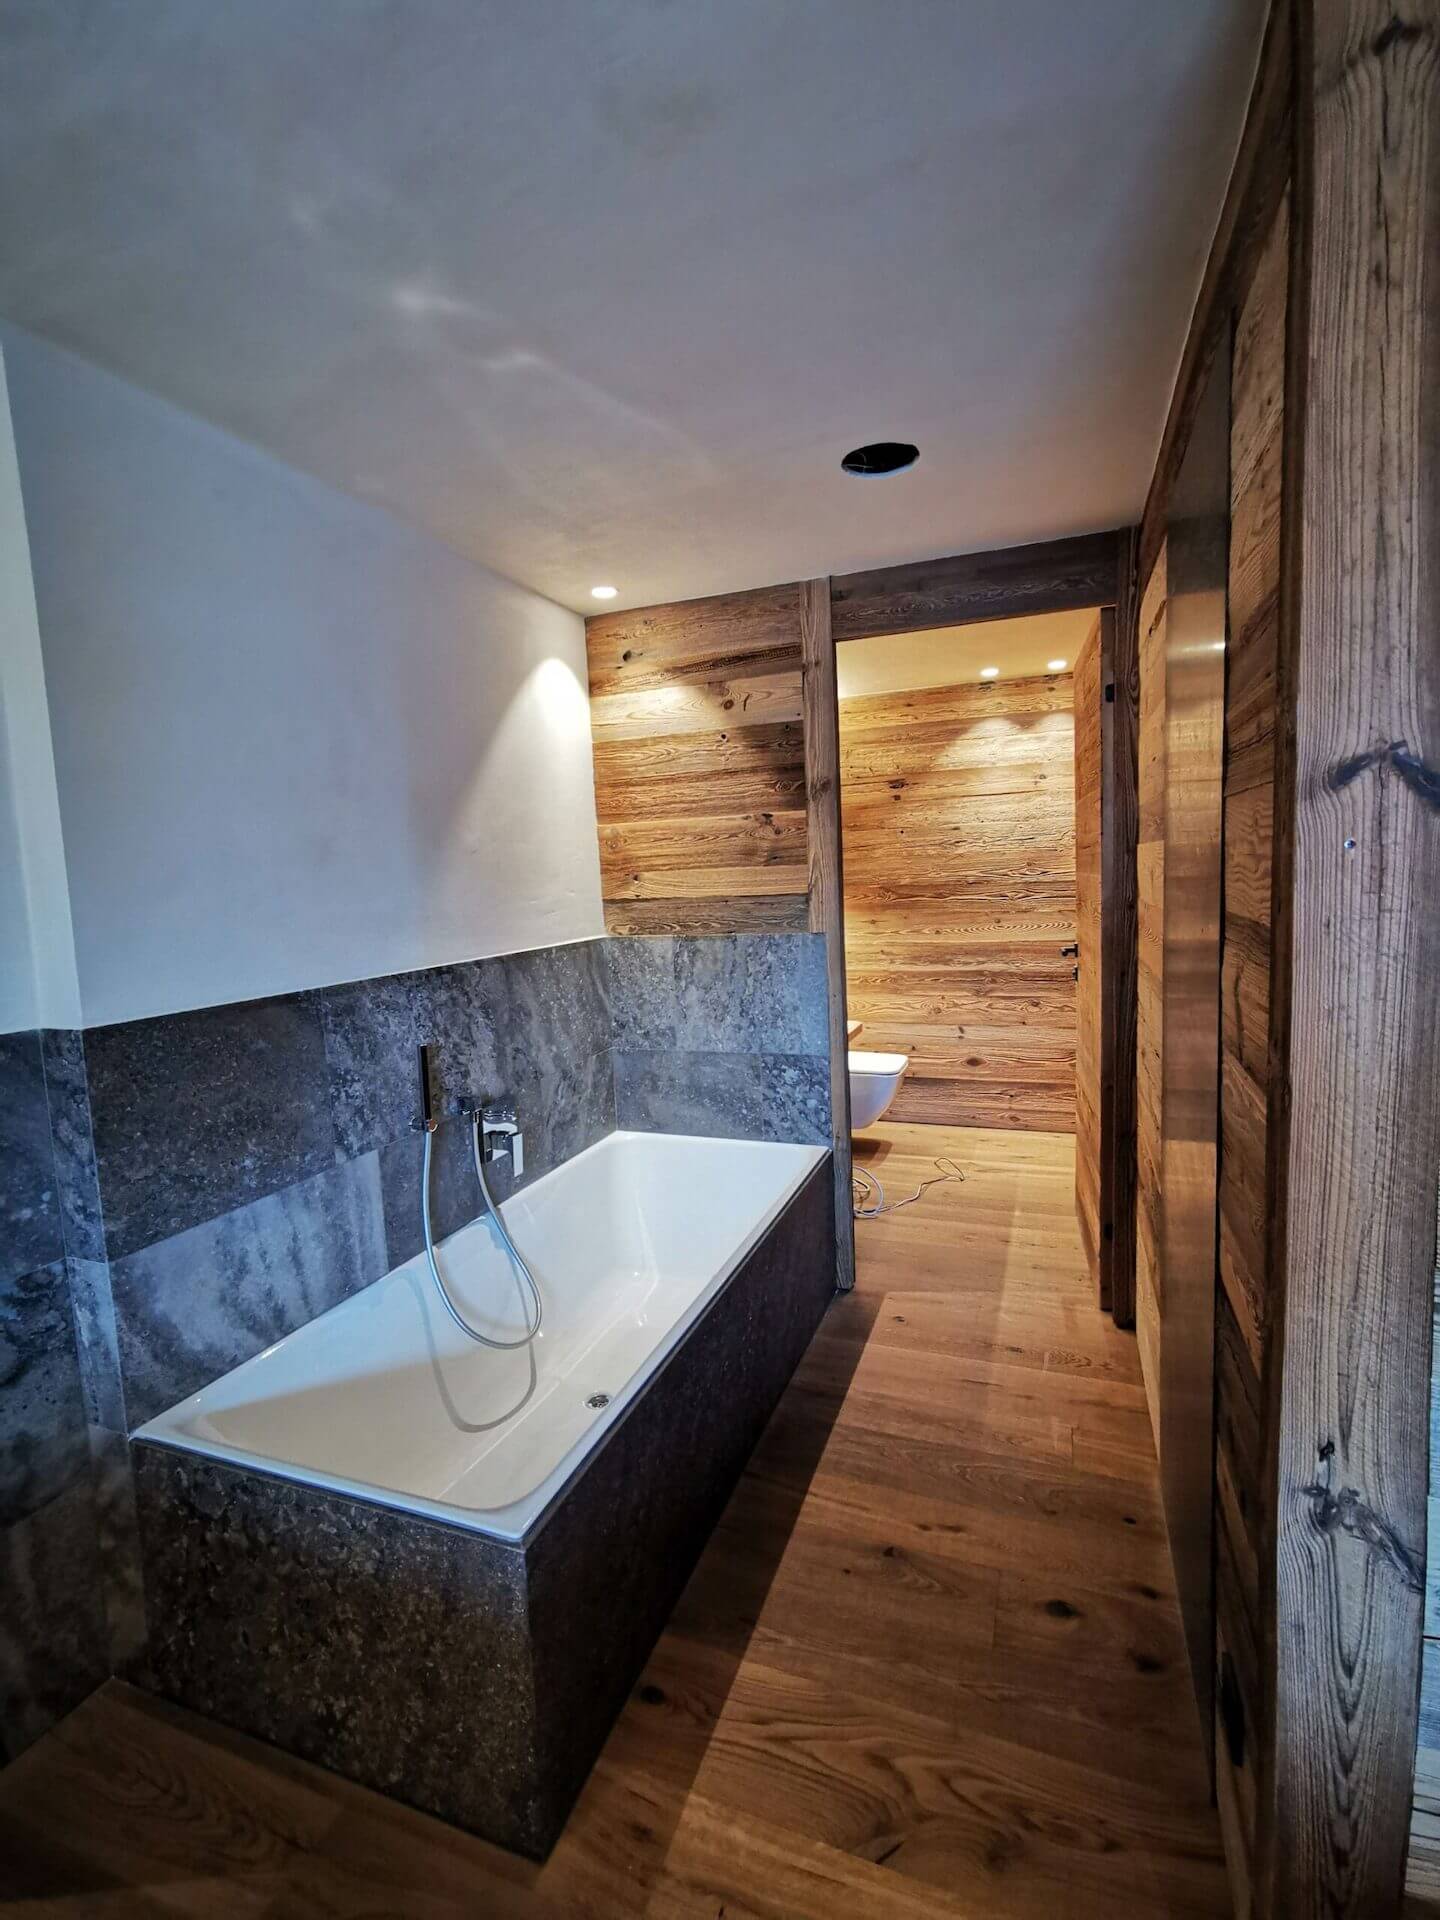 Badezimmer - Wände aus Holz